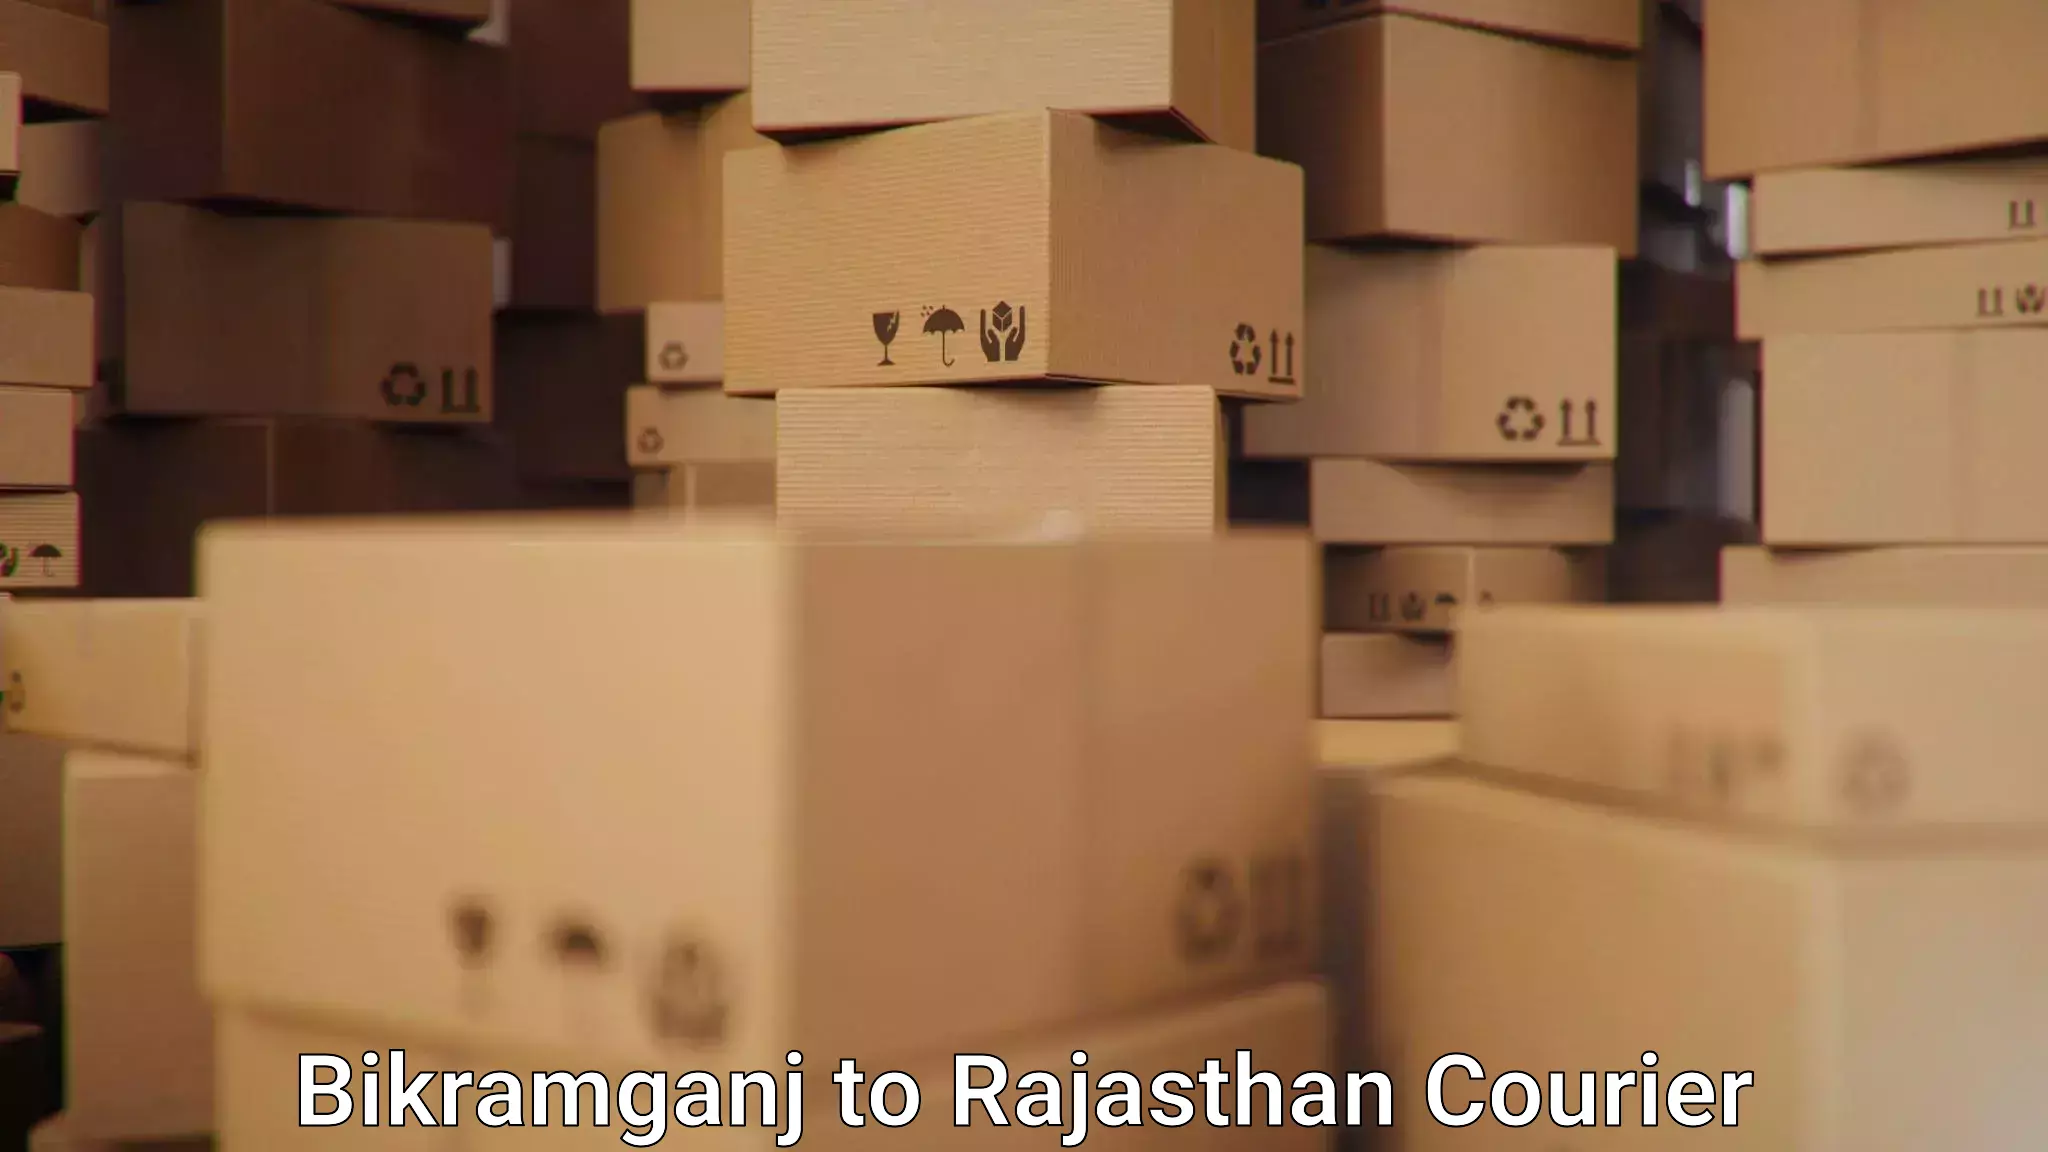 Professional parcel services Bikramganj to Rajasthan